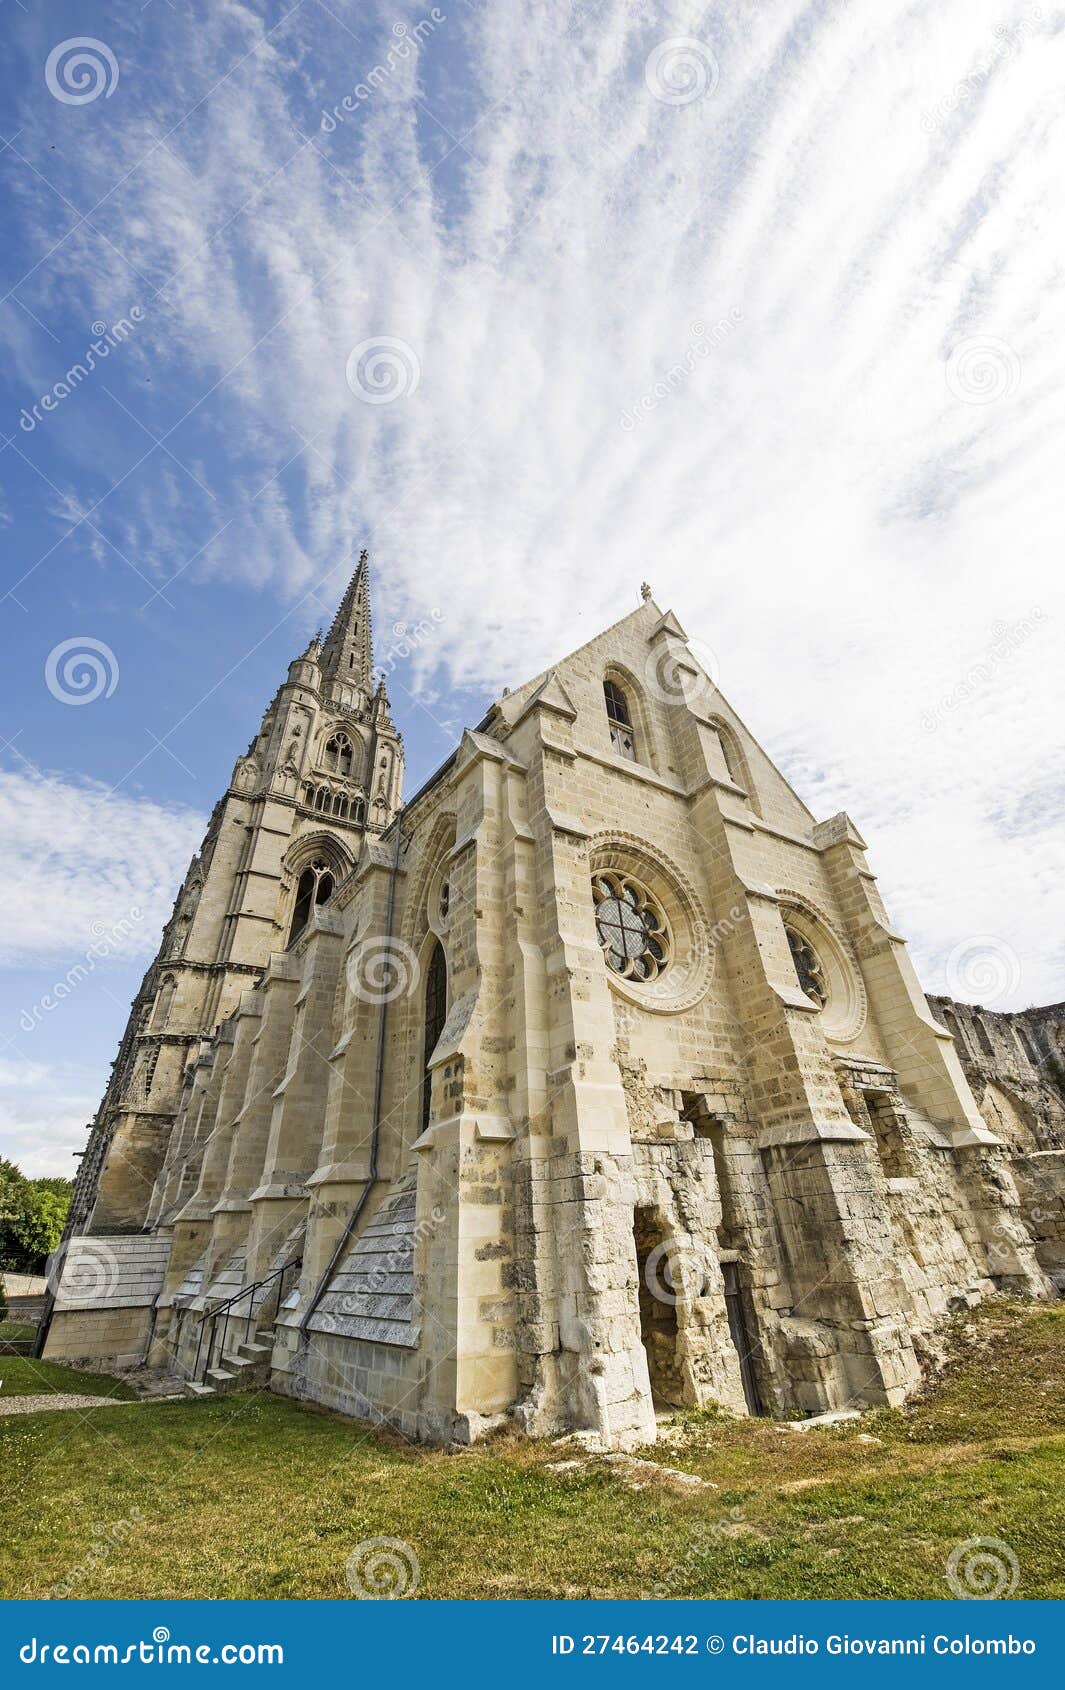 Abtei von Str.-Jean-DES Vignes in Soissons. Abtei von Str.-Jean-DES-Vignes in Soissons (Aisne, Picardie, Frankreich), Ruinen